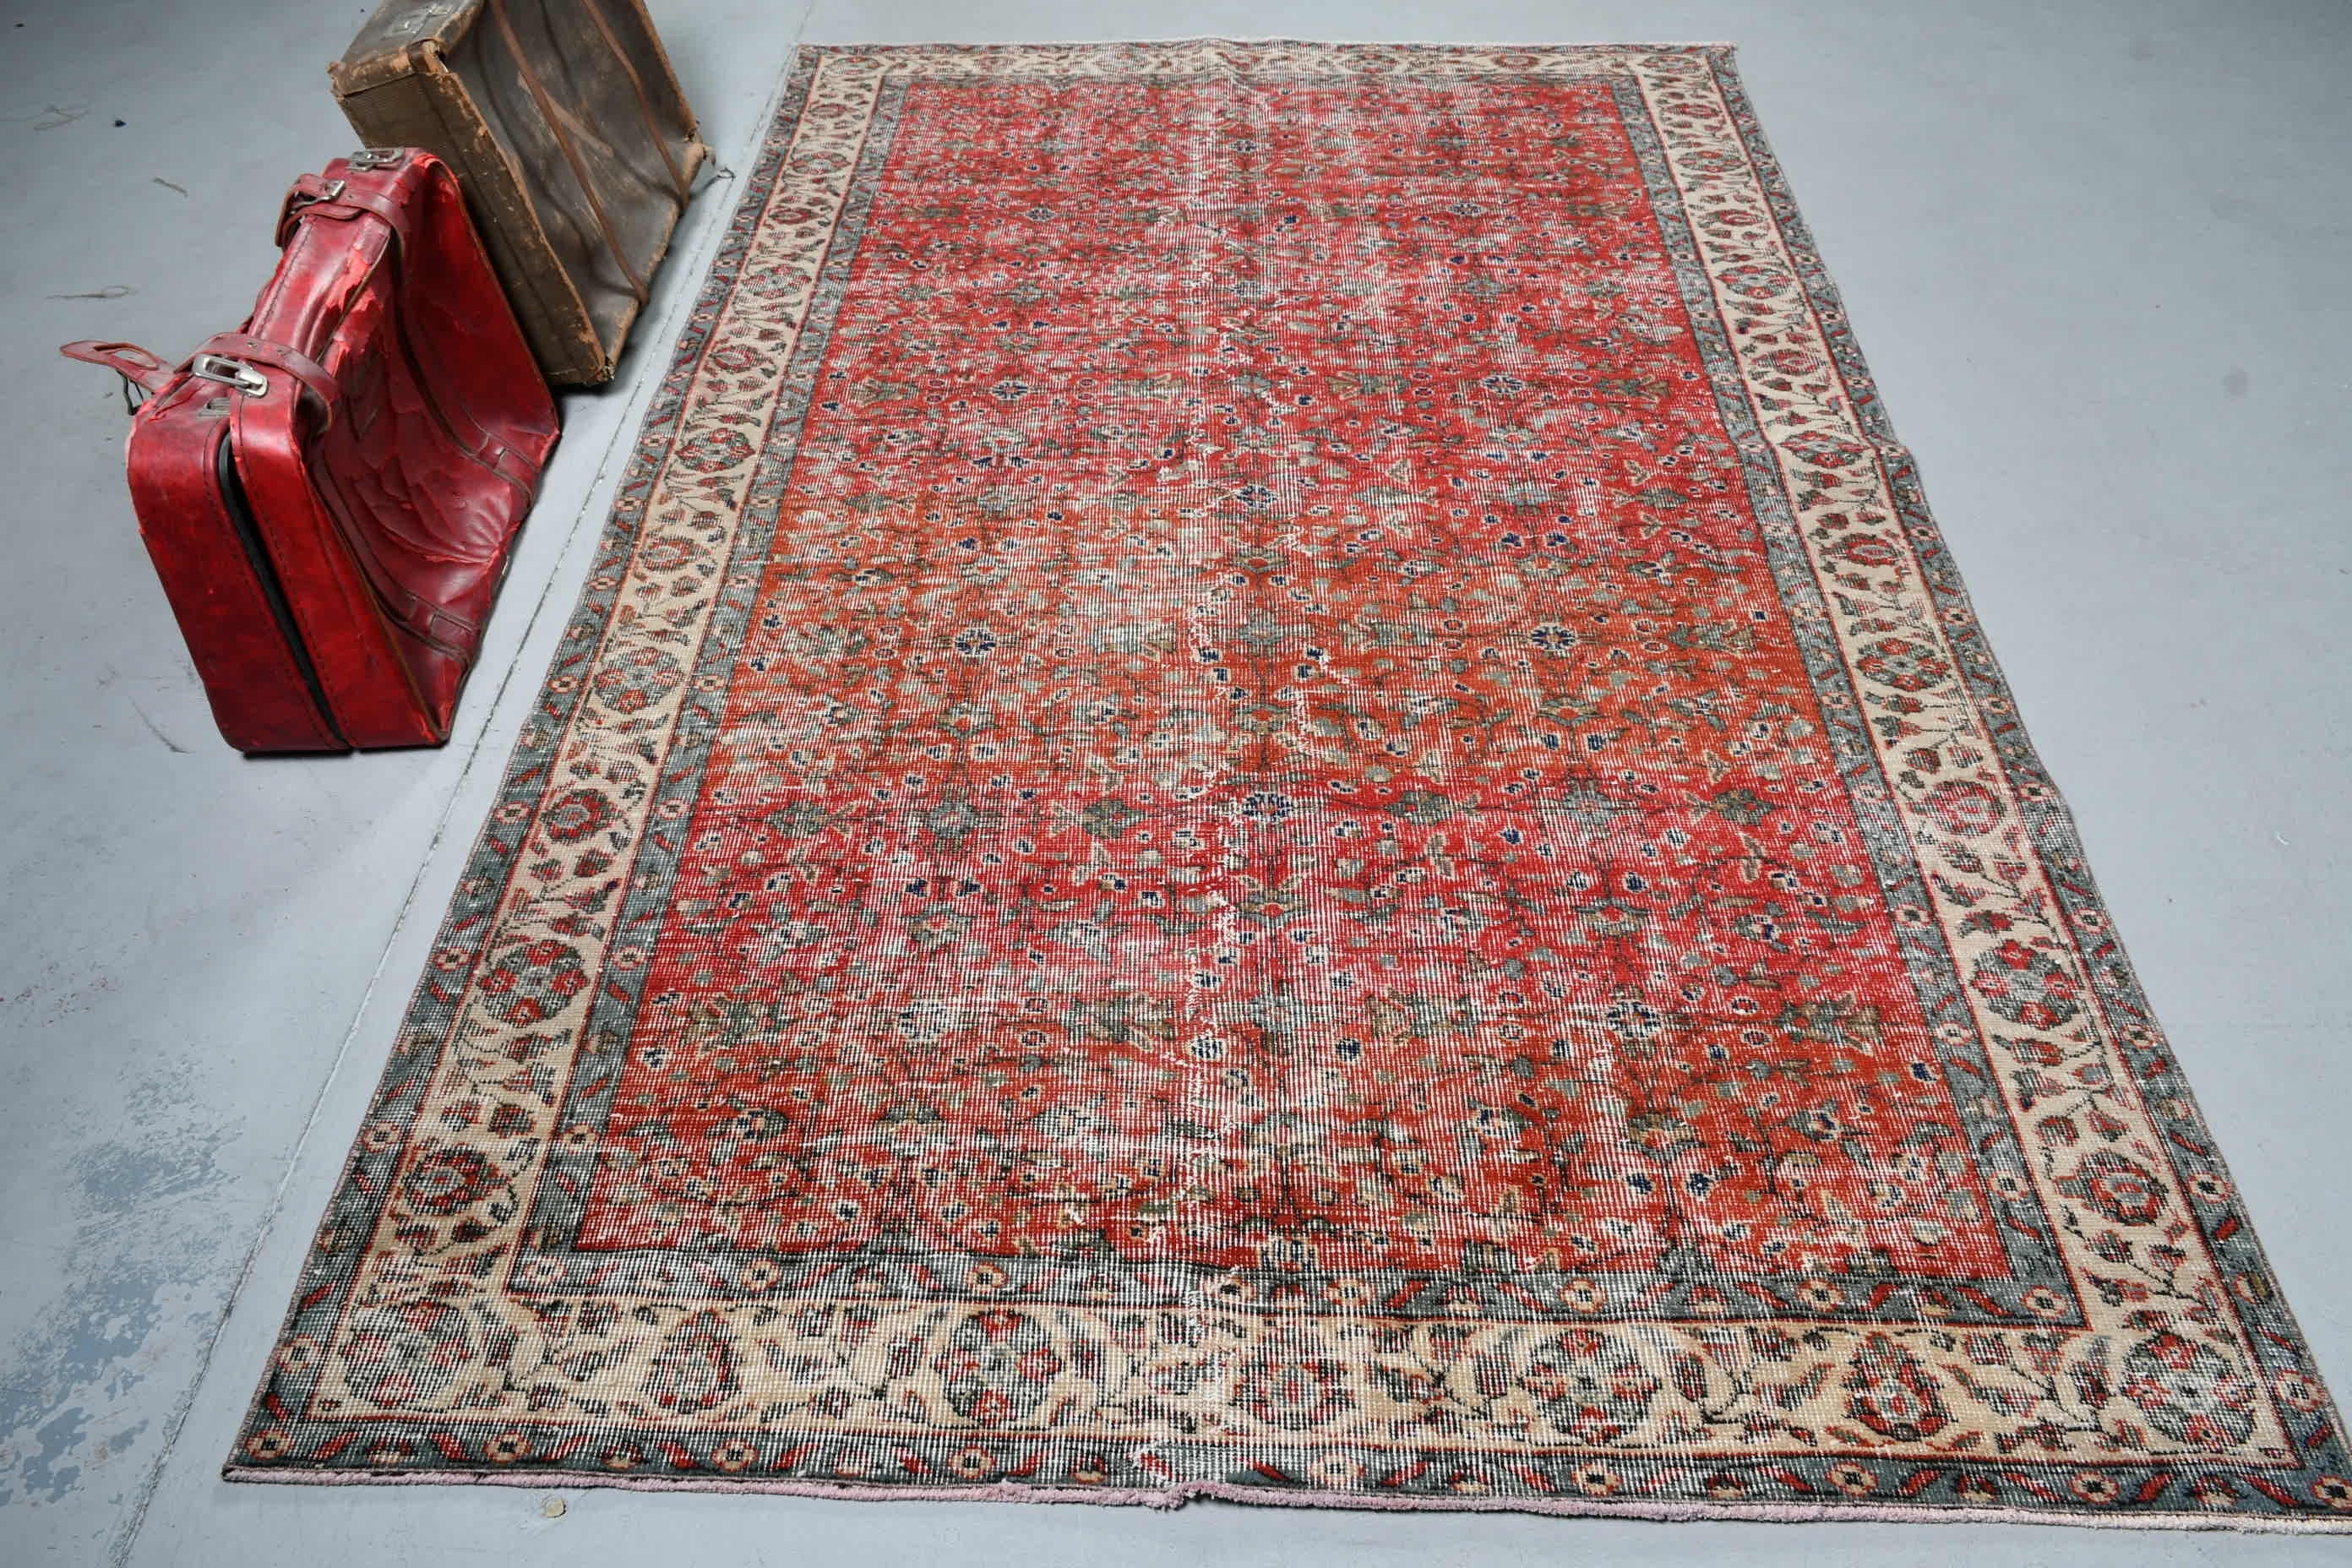 Red Bedroom Rug, Moroccan Rugs, Old Rug, Turkish Rug, Living Room Rugs, Kitchen Rugs, Dining Room Rugs, Vintage Rugs, 5.3x8.8 ft Large Rugs